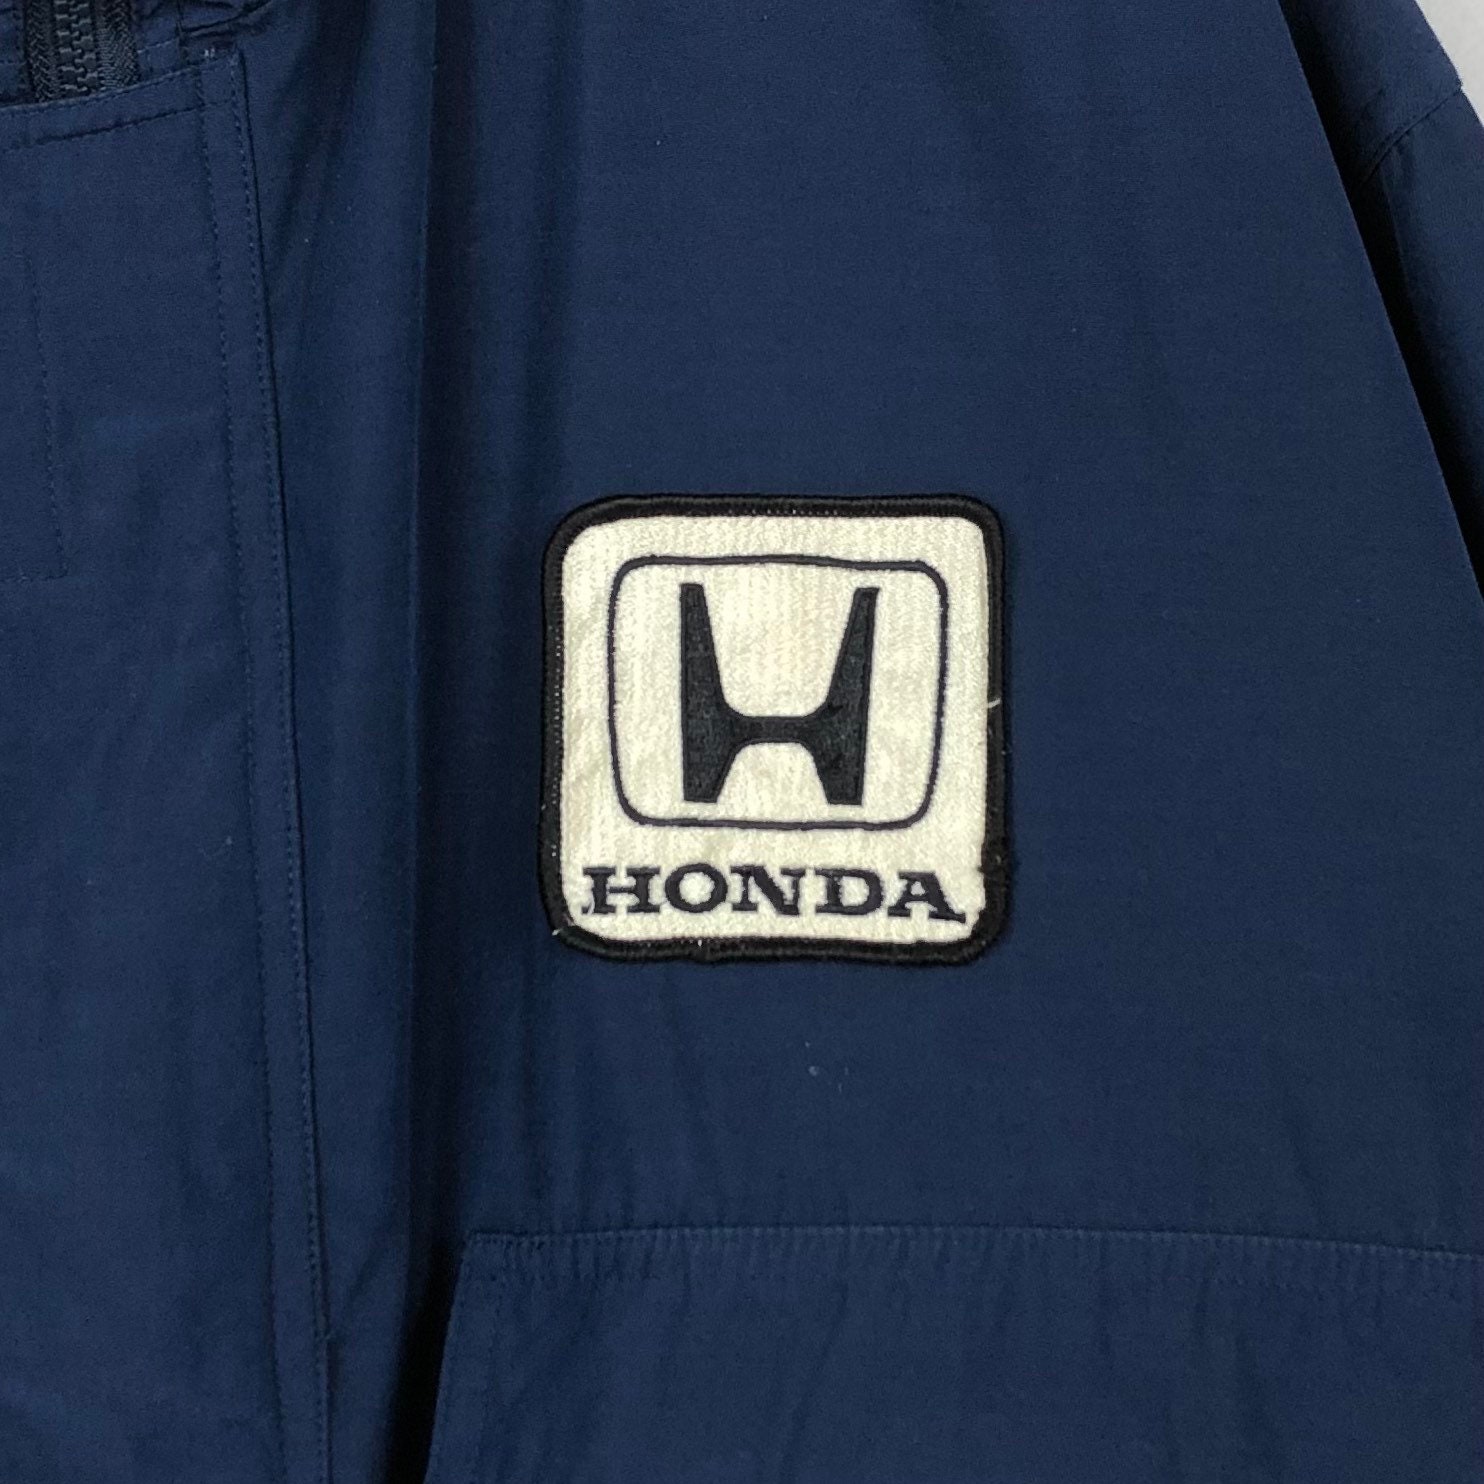 Vintage Honda G Speed Jacket Size Large   Etsy